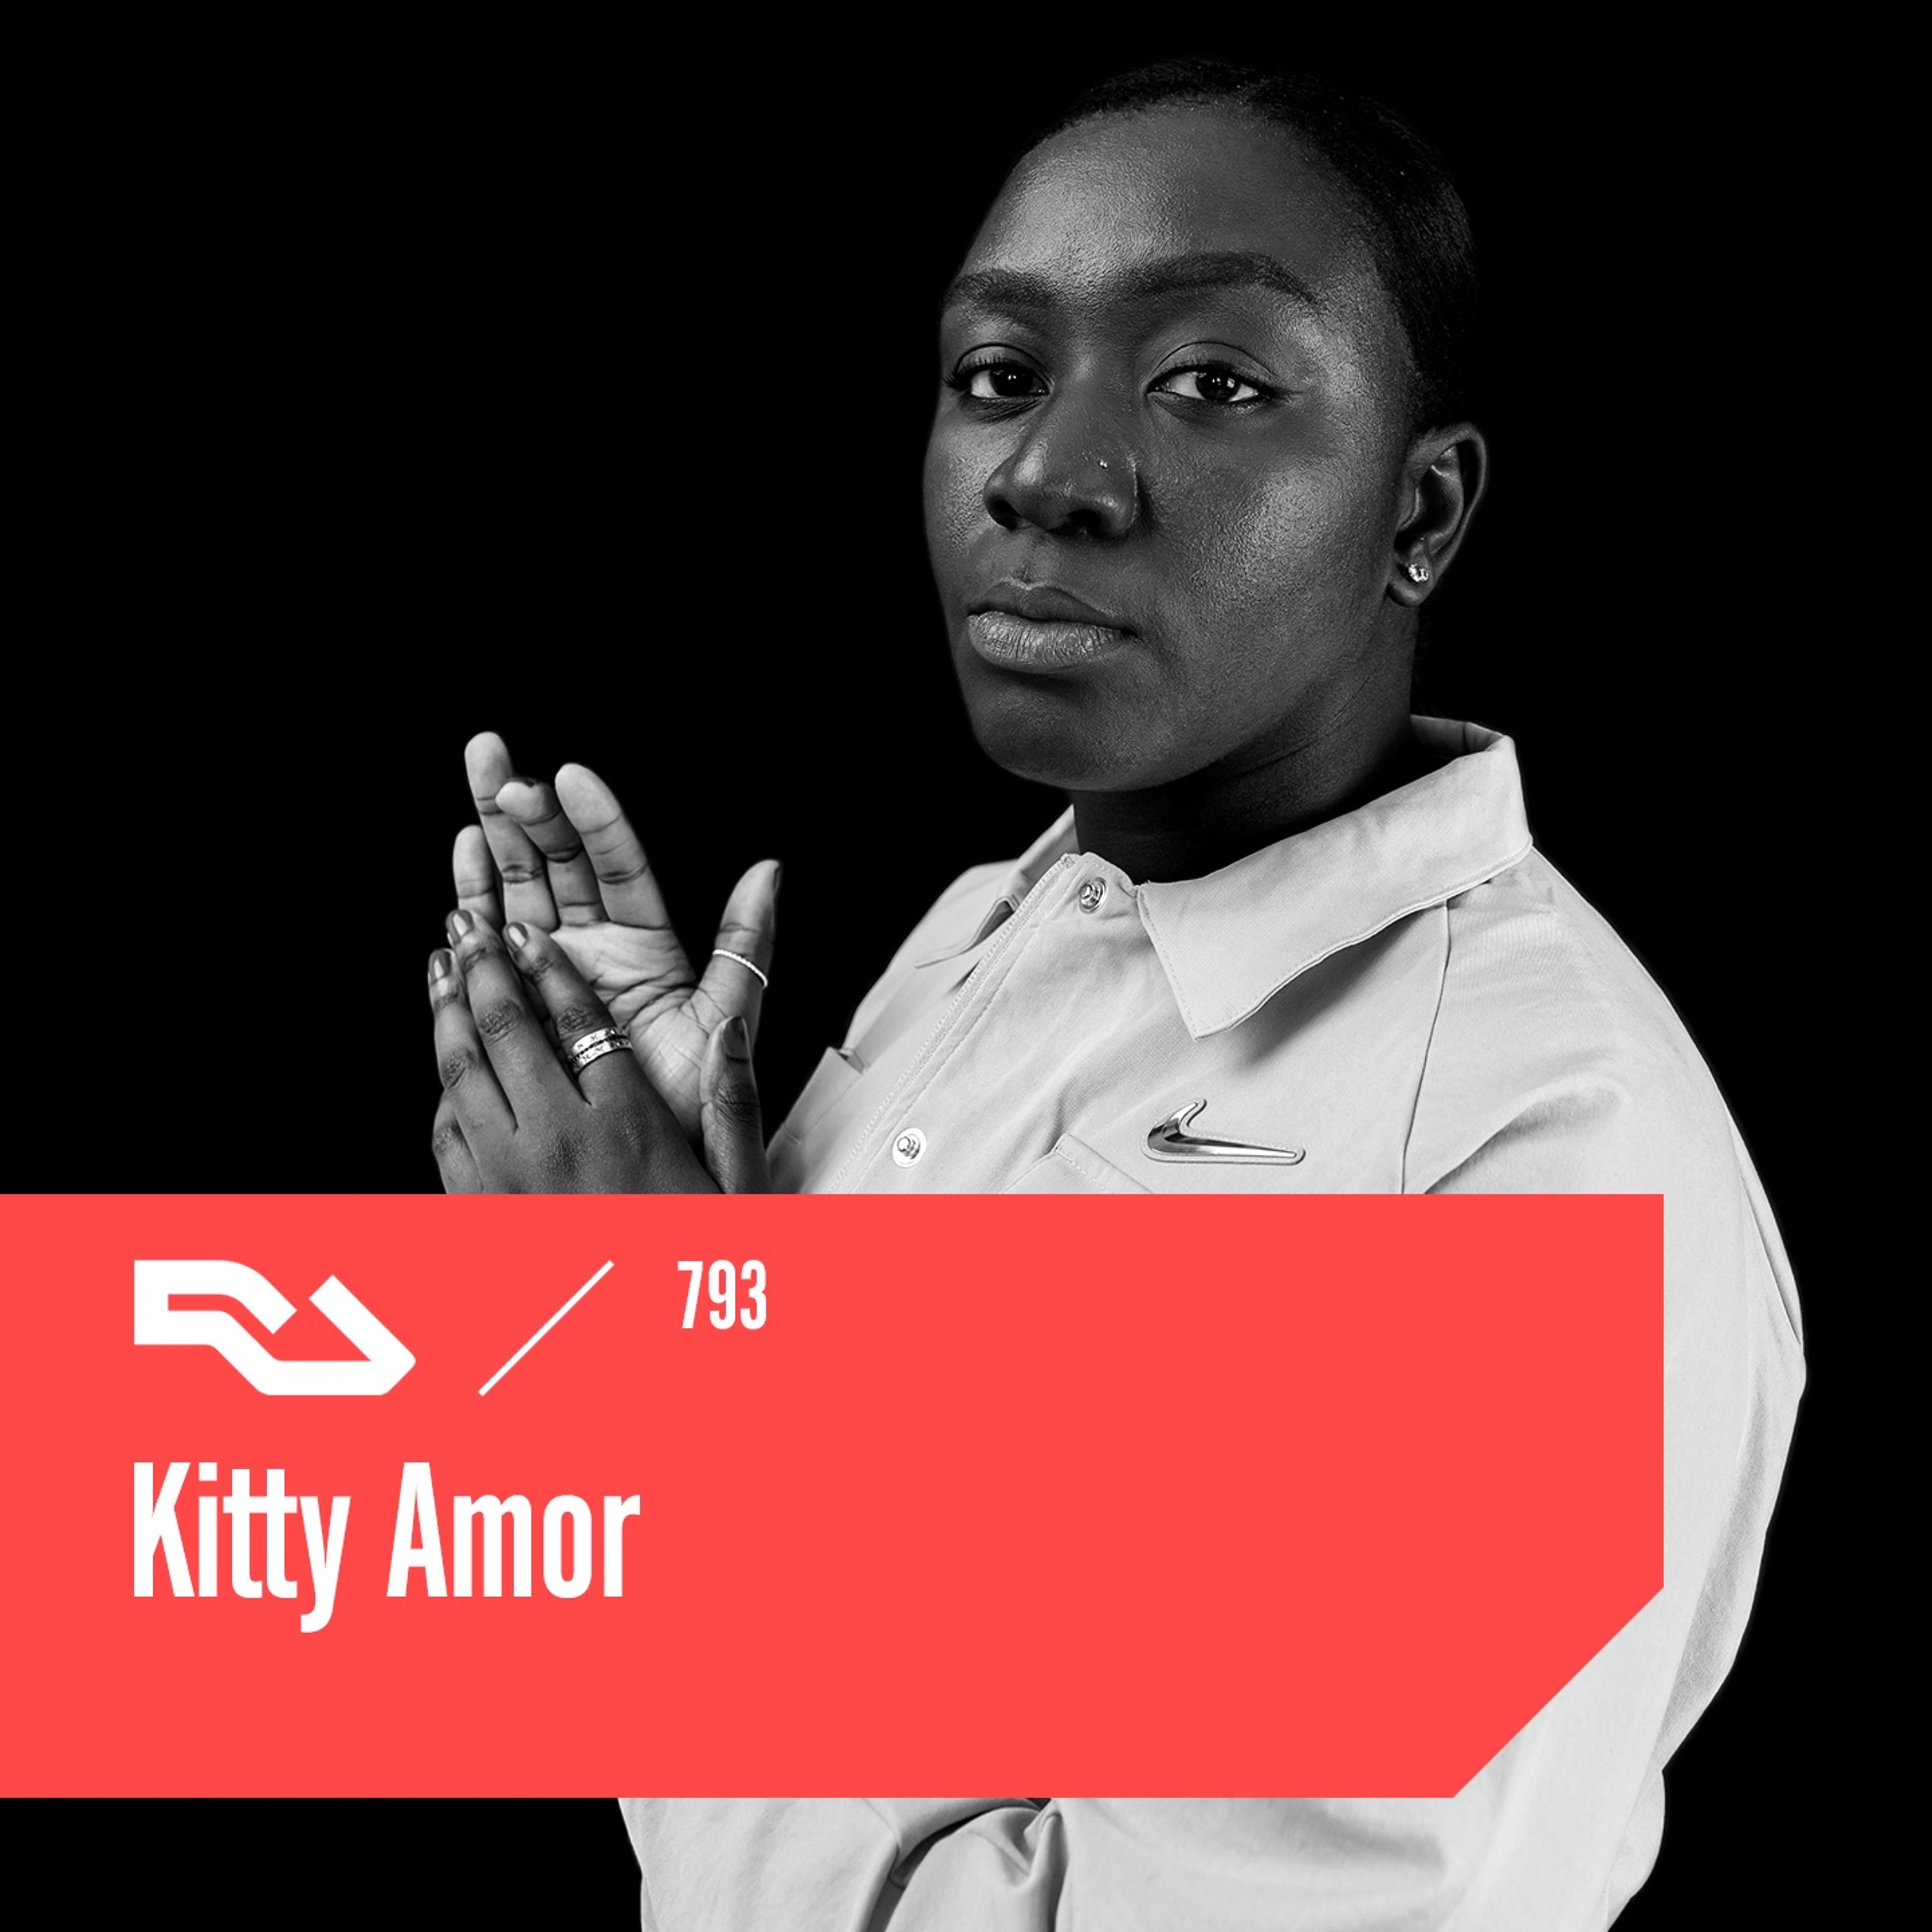 RA.793 Kitty Amor